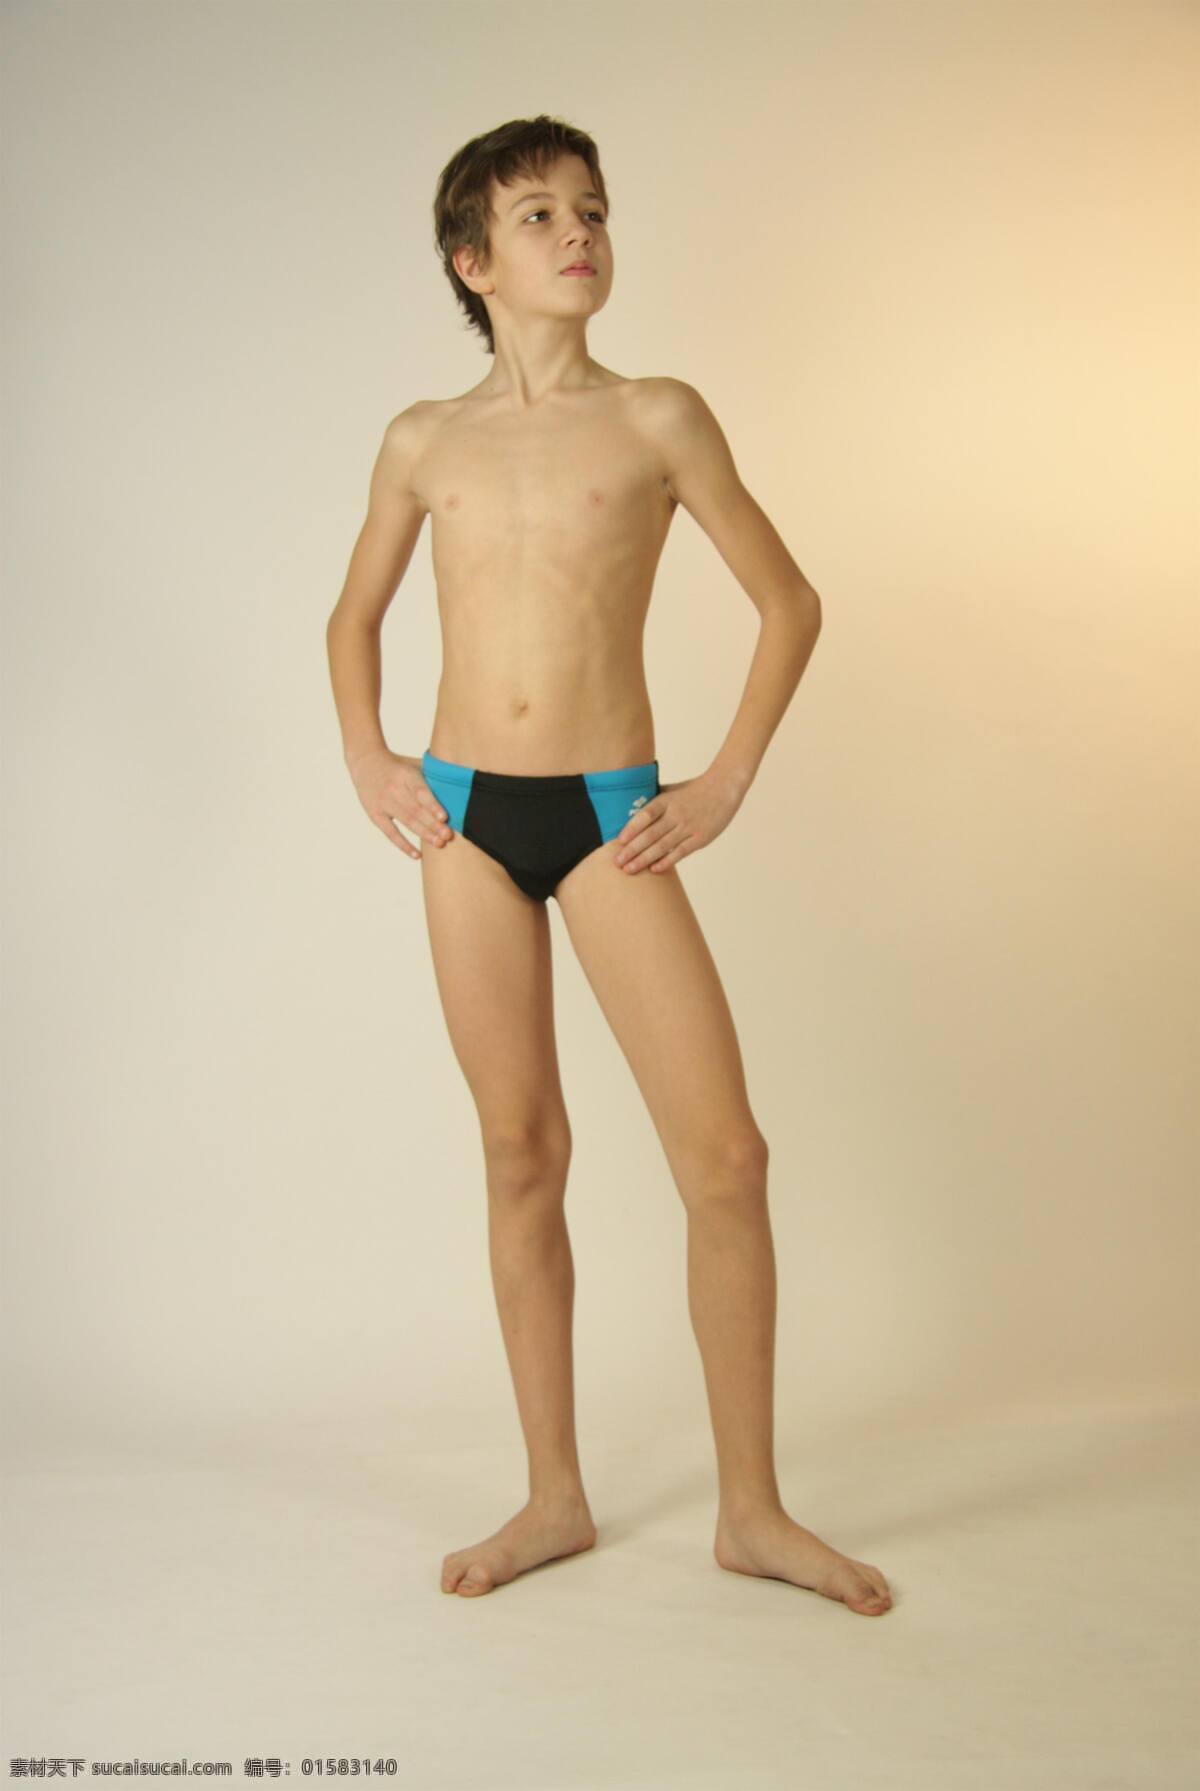 穿着 游泳 短裤 男孩 泳装 姿势 室内 游泳裤 外国男孩 西方男孩 少年儿童 三角裤 正面 模特 小模特 体育运动 文化艺术